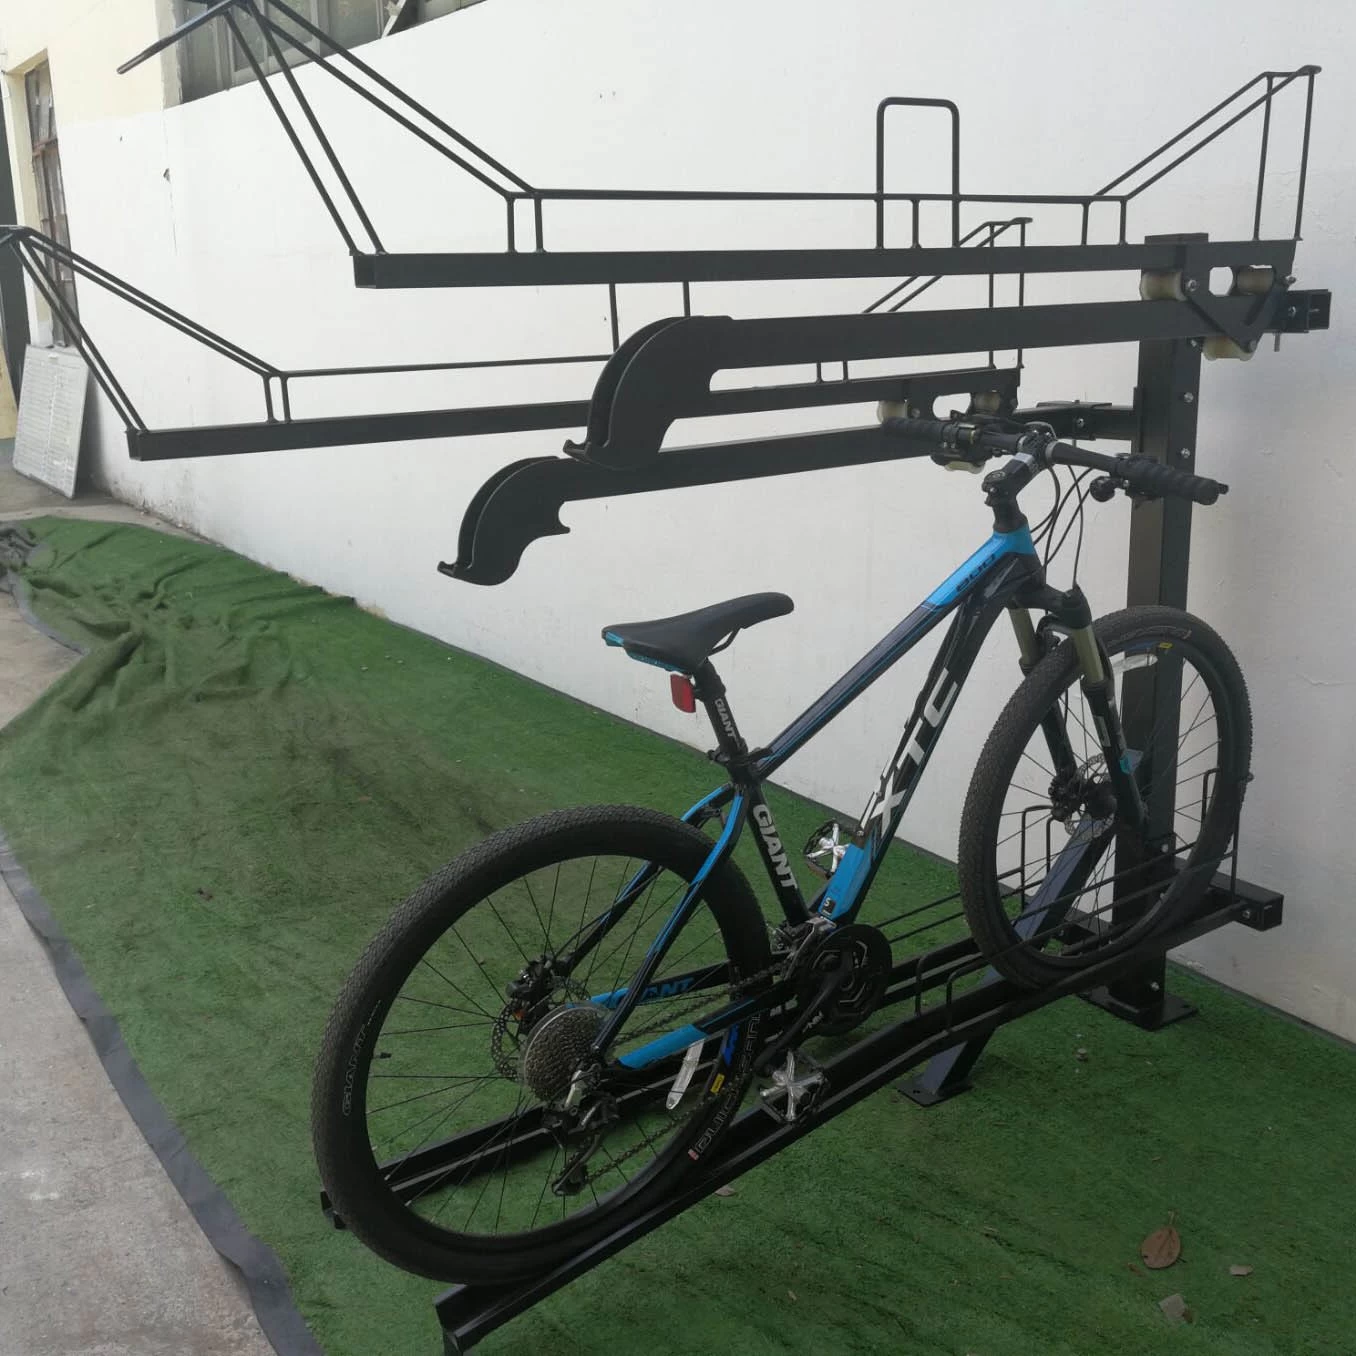 Soporte de suelo para bicicletas, soporte de estacionamiento para